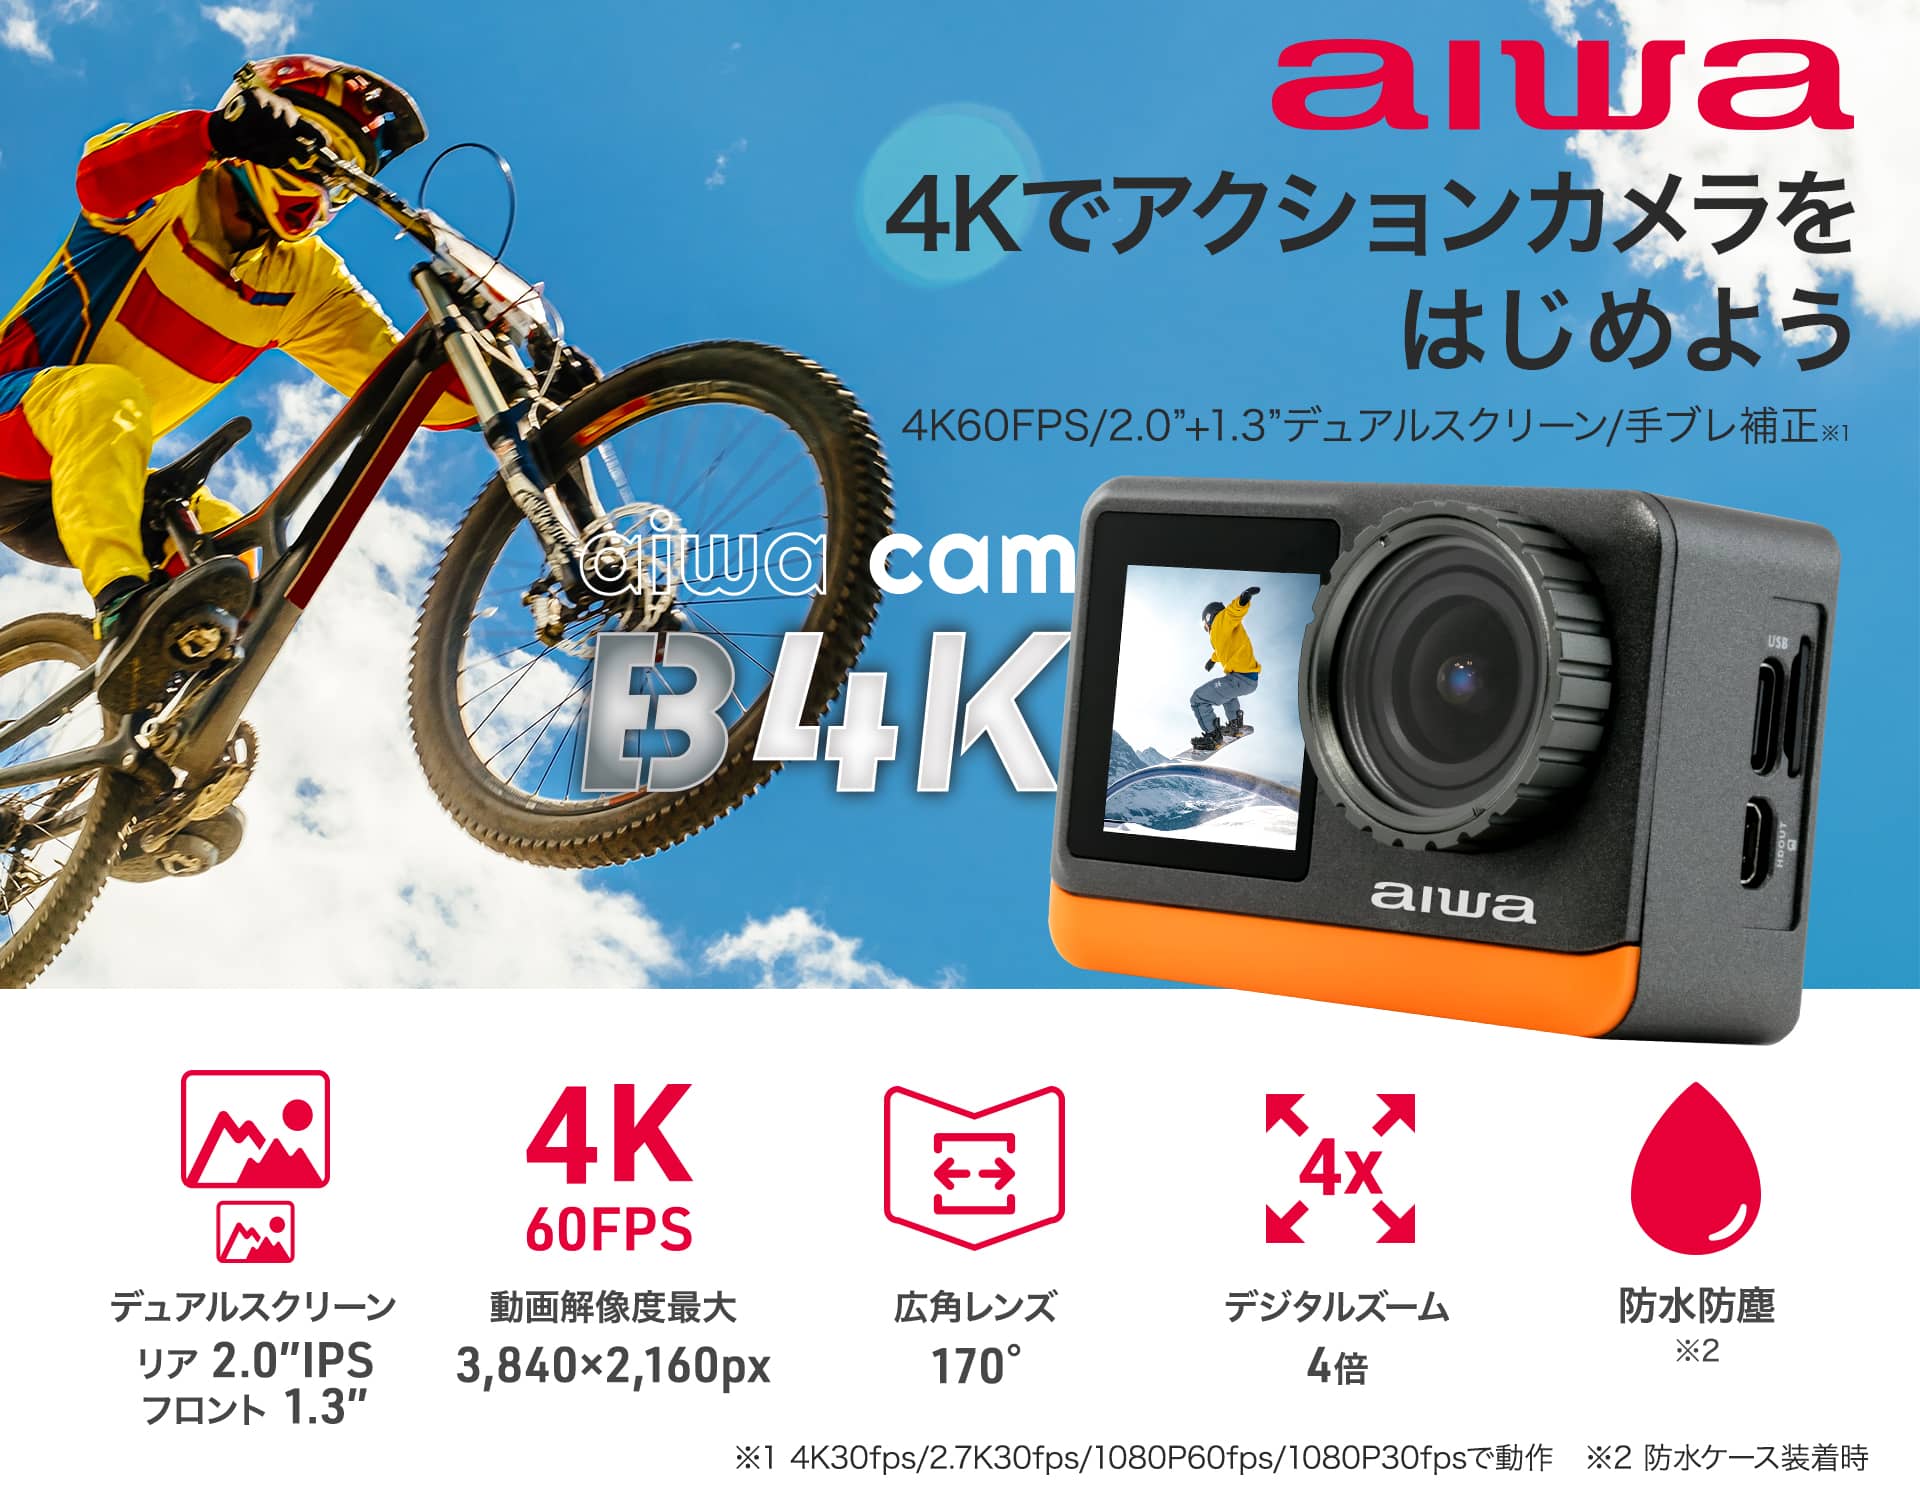 アクションカメラ aiwa cam B4K【JA3-ACM0002-D】